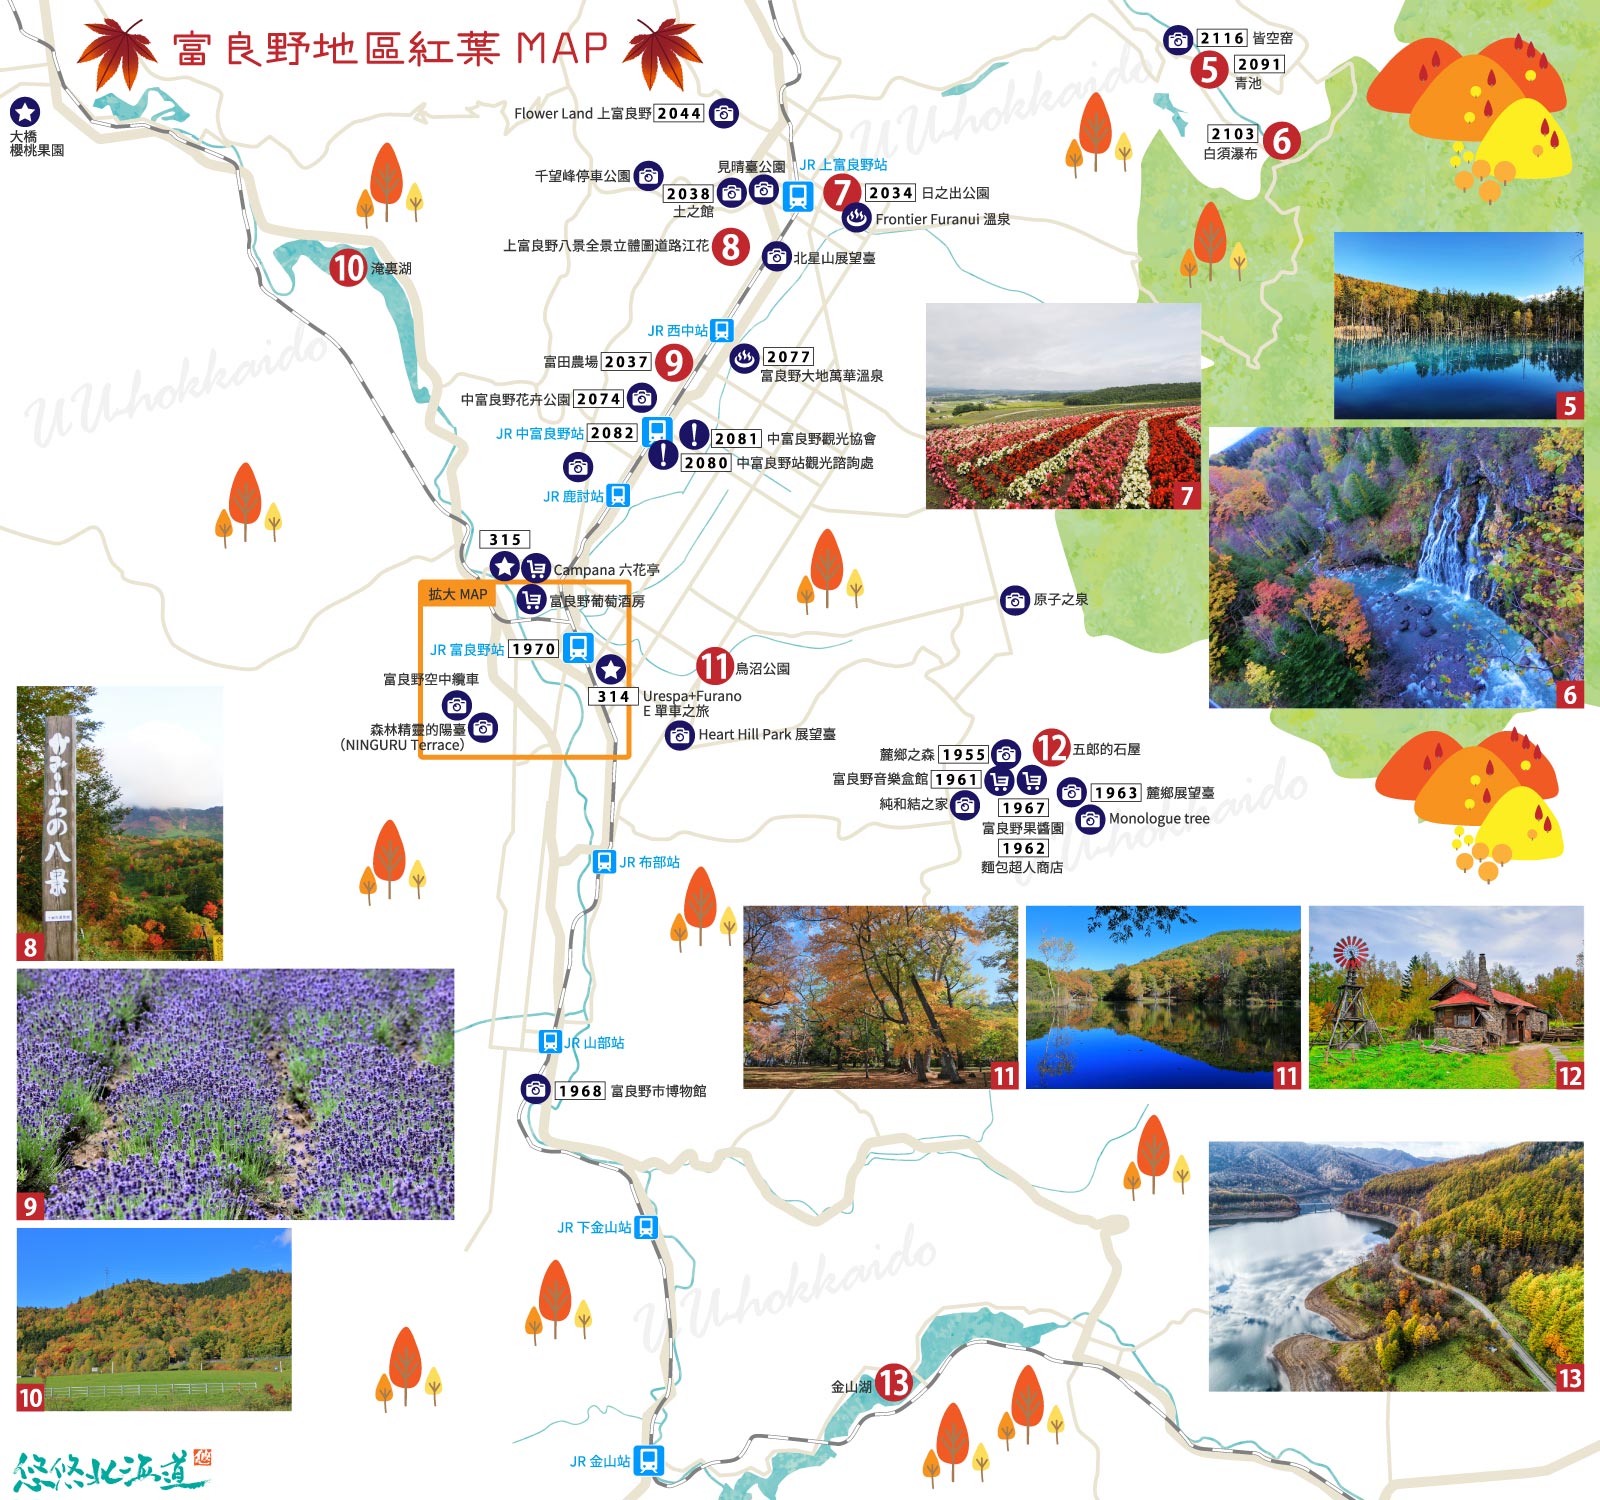 富良野周圍散步MAP